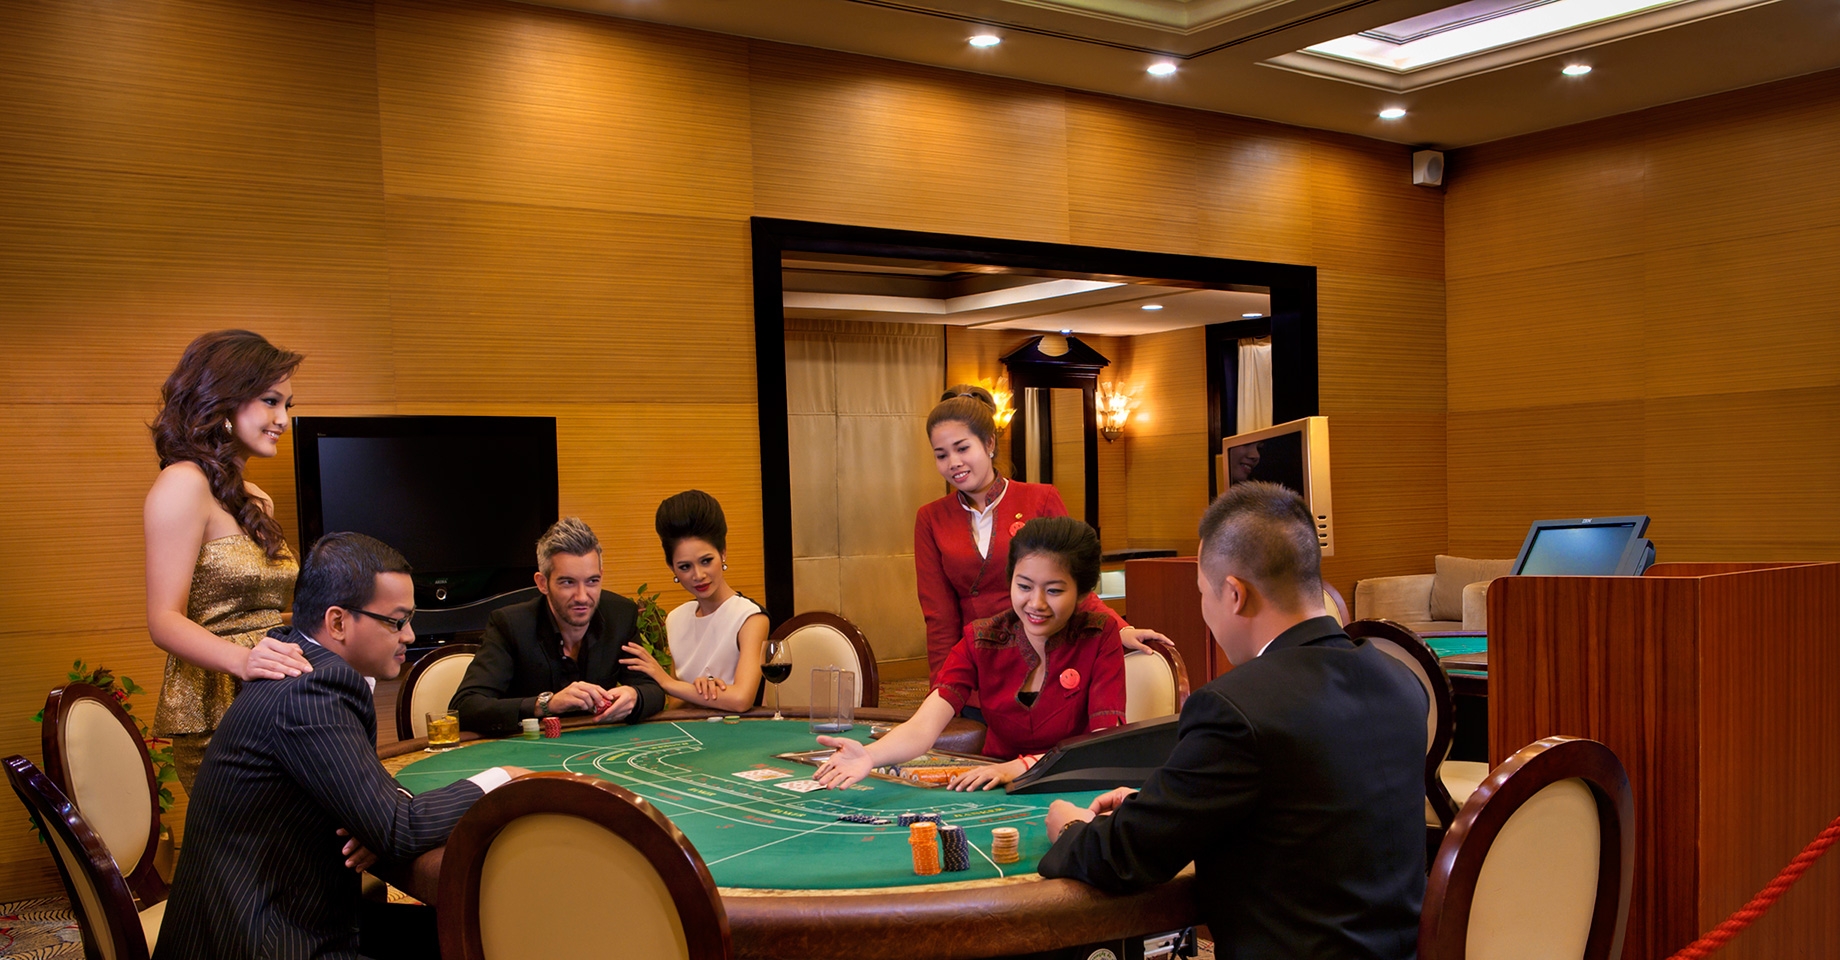 Cambodia's Largest Casino